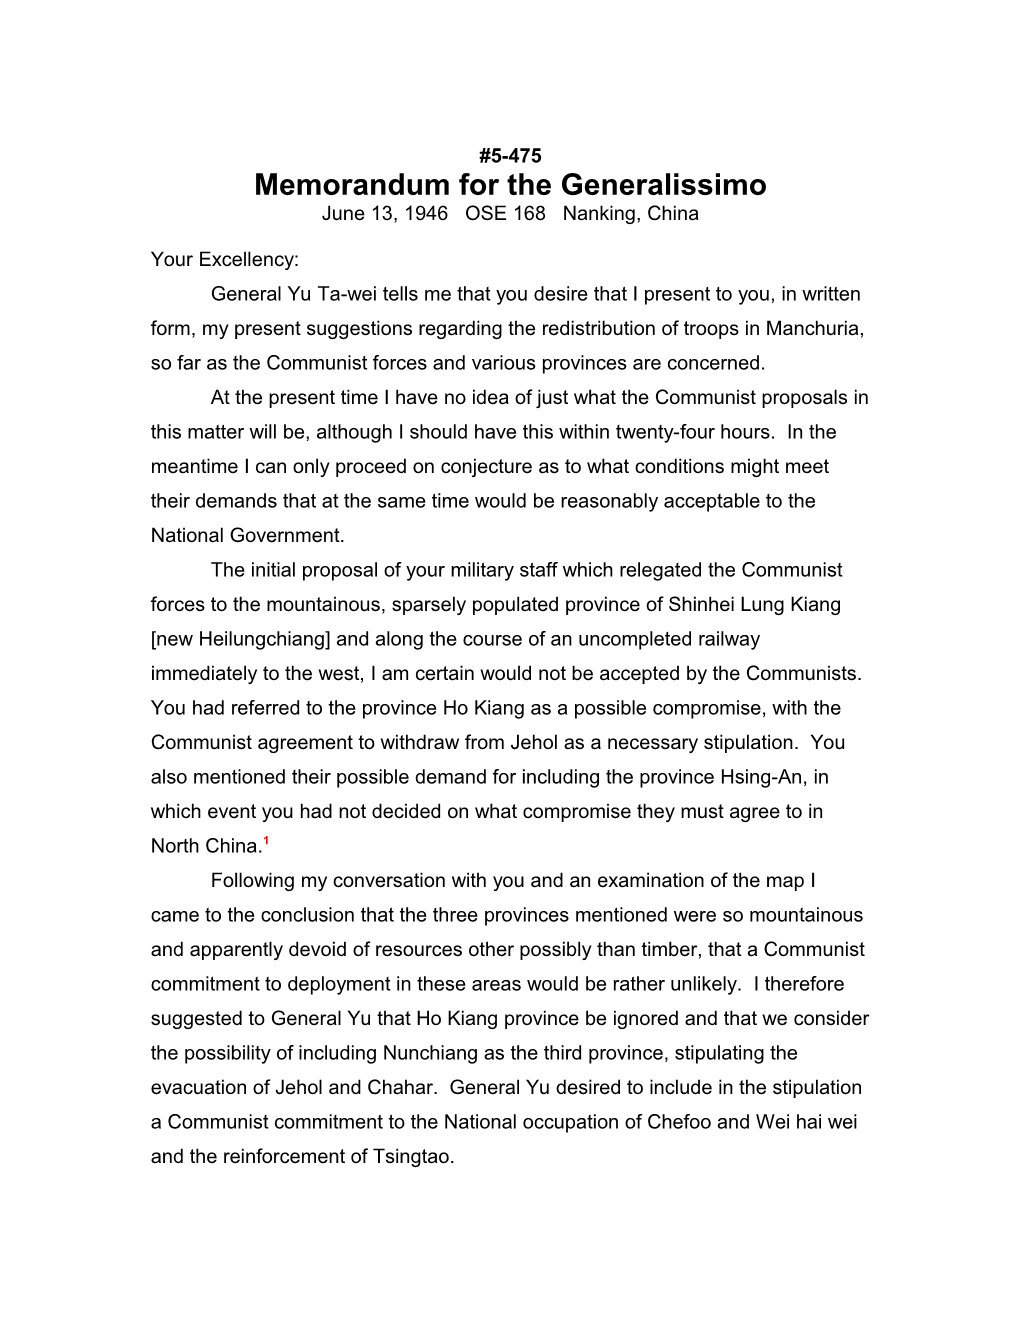 Memorandum for the Generalissimo